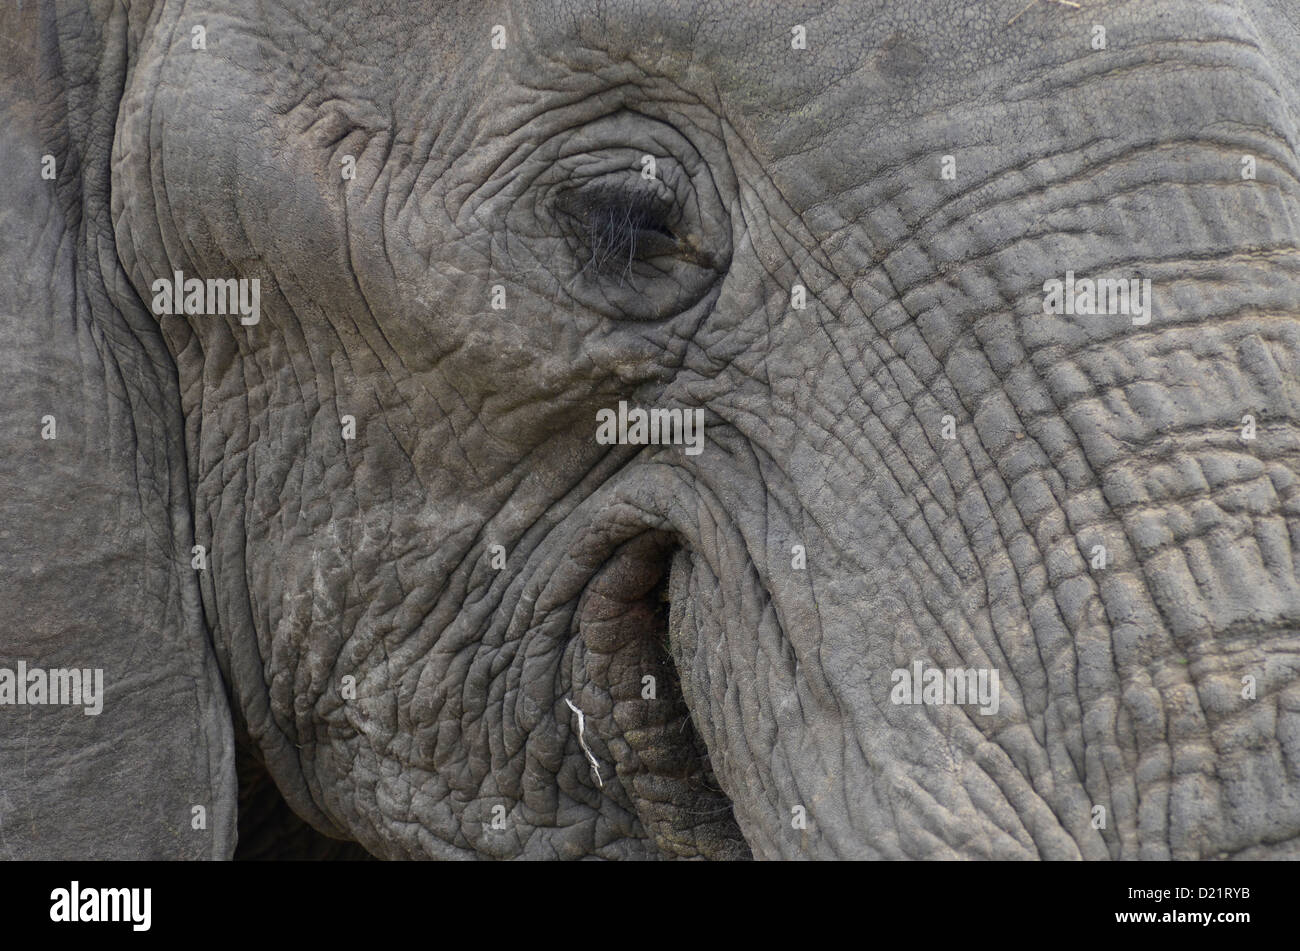 Elephant close up, Photo Chris du Plessis Stock Photo